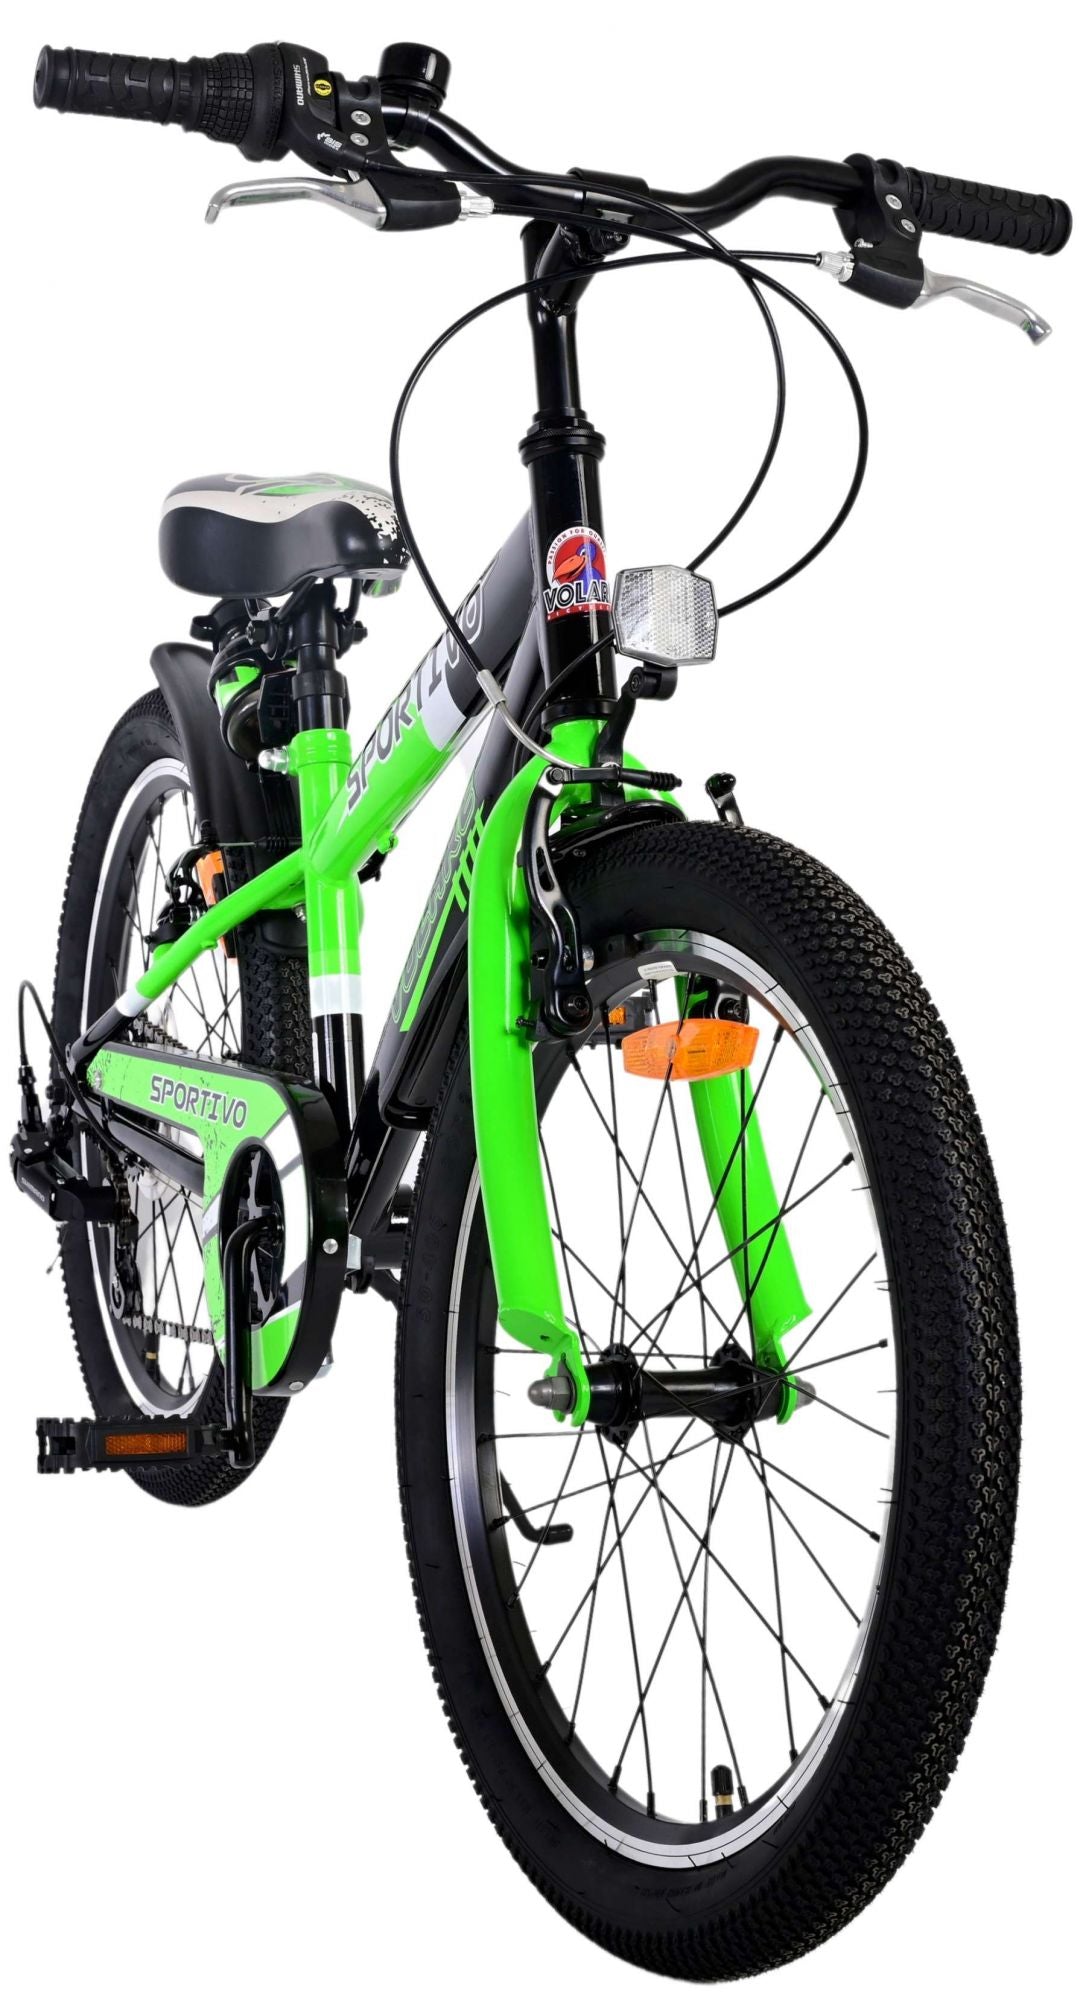 Bicicleta para niños Volare Sportivo - Niños - 20 pulgadas - Verde - 7 engranajes